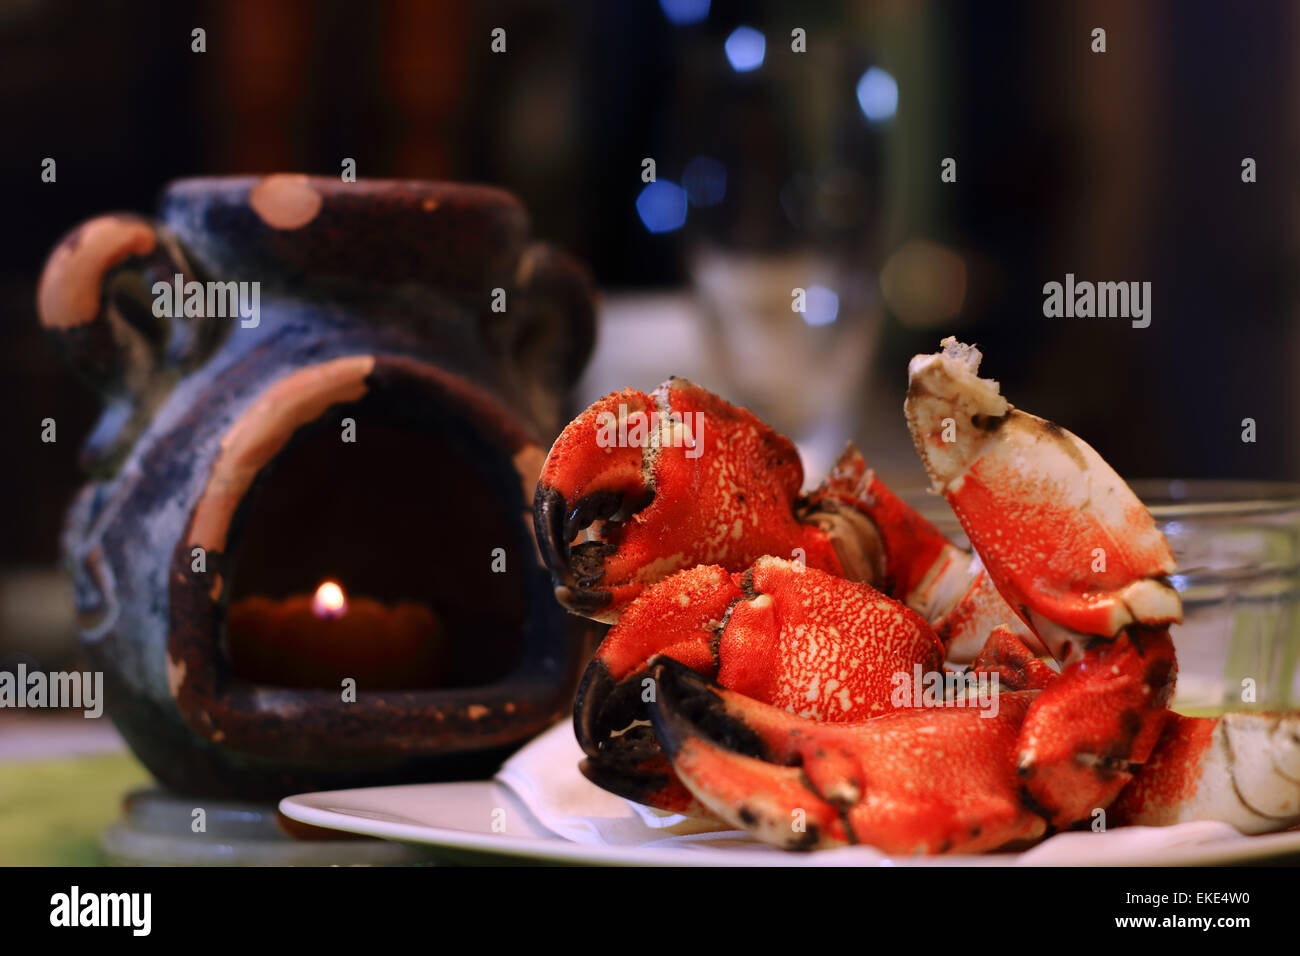 Jonas pinces de crabe sur une assiette, avec la lumière de bougie et defocsed en verre de vin restaurant gastronomique. Jonas les crabes, aka la bouse de l'Atlantique Banque D'Images